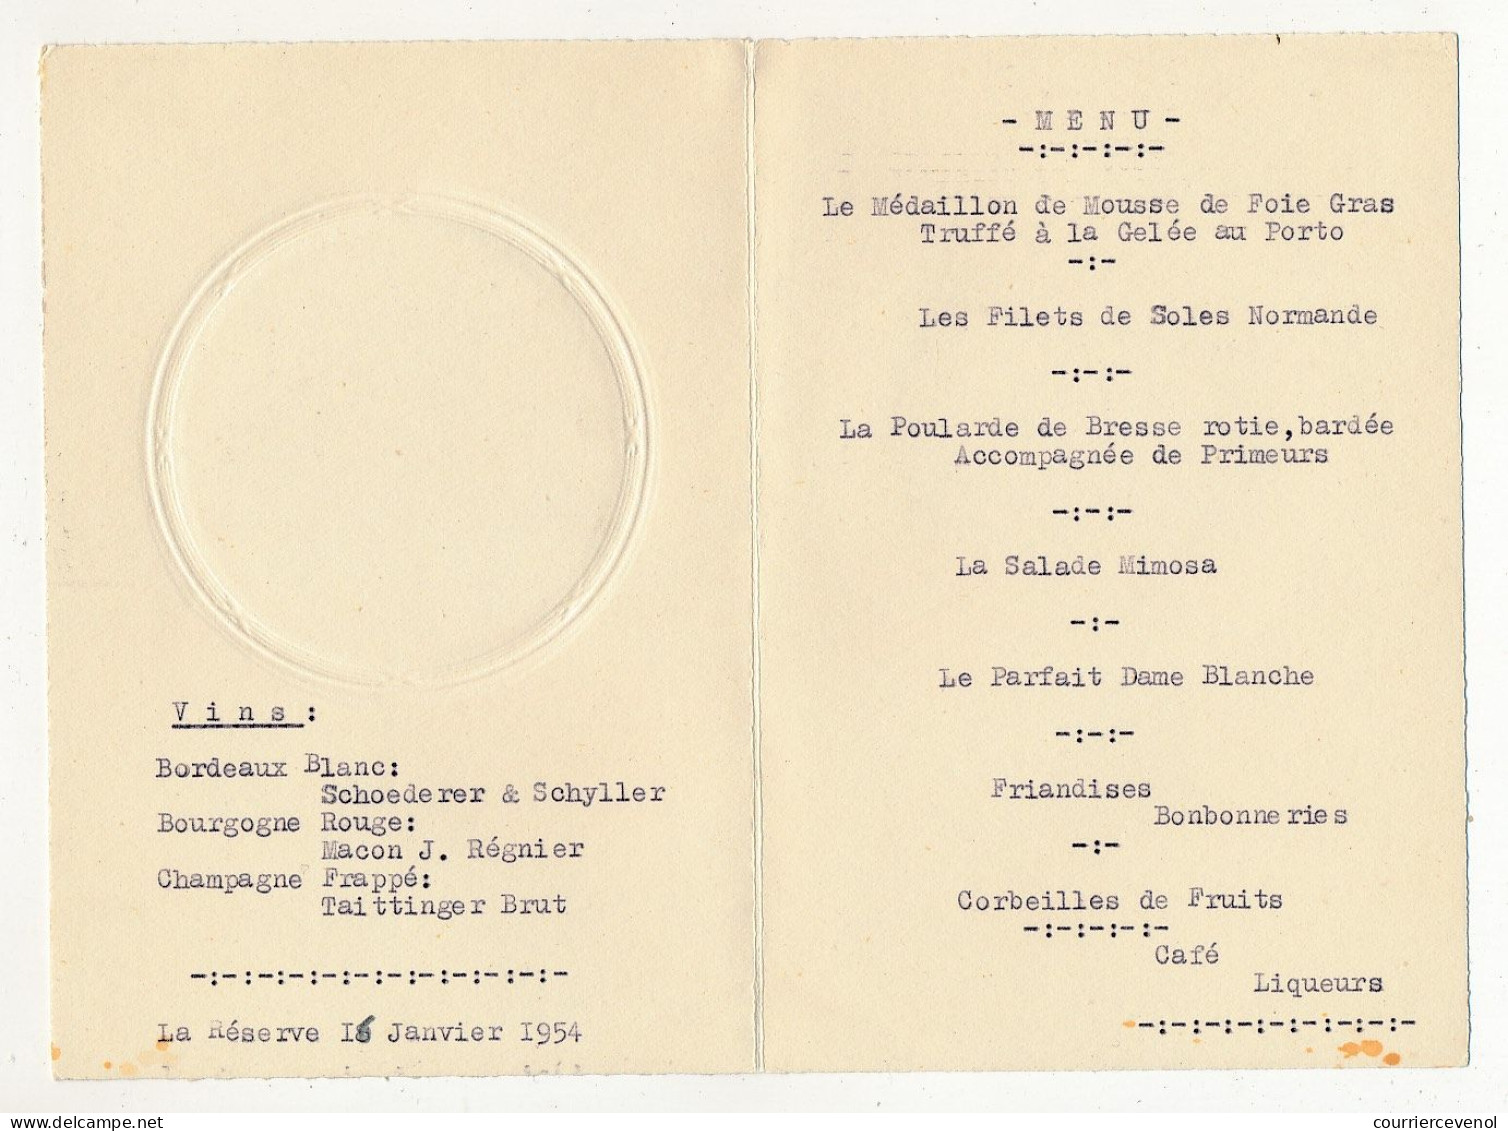 FRANCE - 3 Menus Illustrations Romantiques - Restaurant La Réserve Marseille - 16 Janvier 1954 - Menükarten